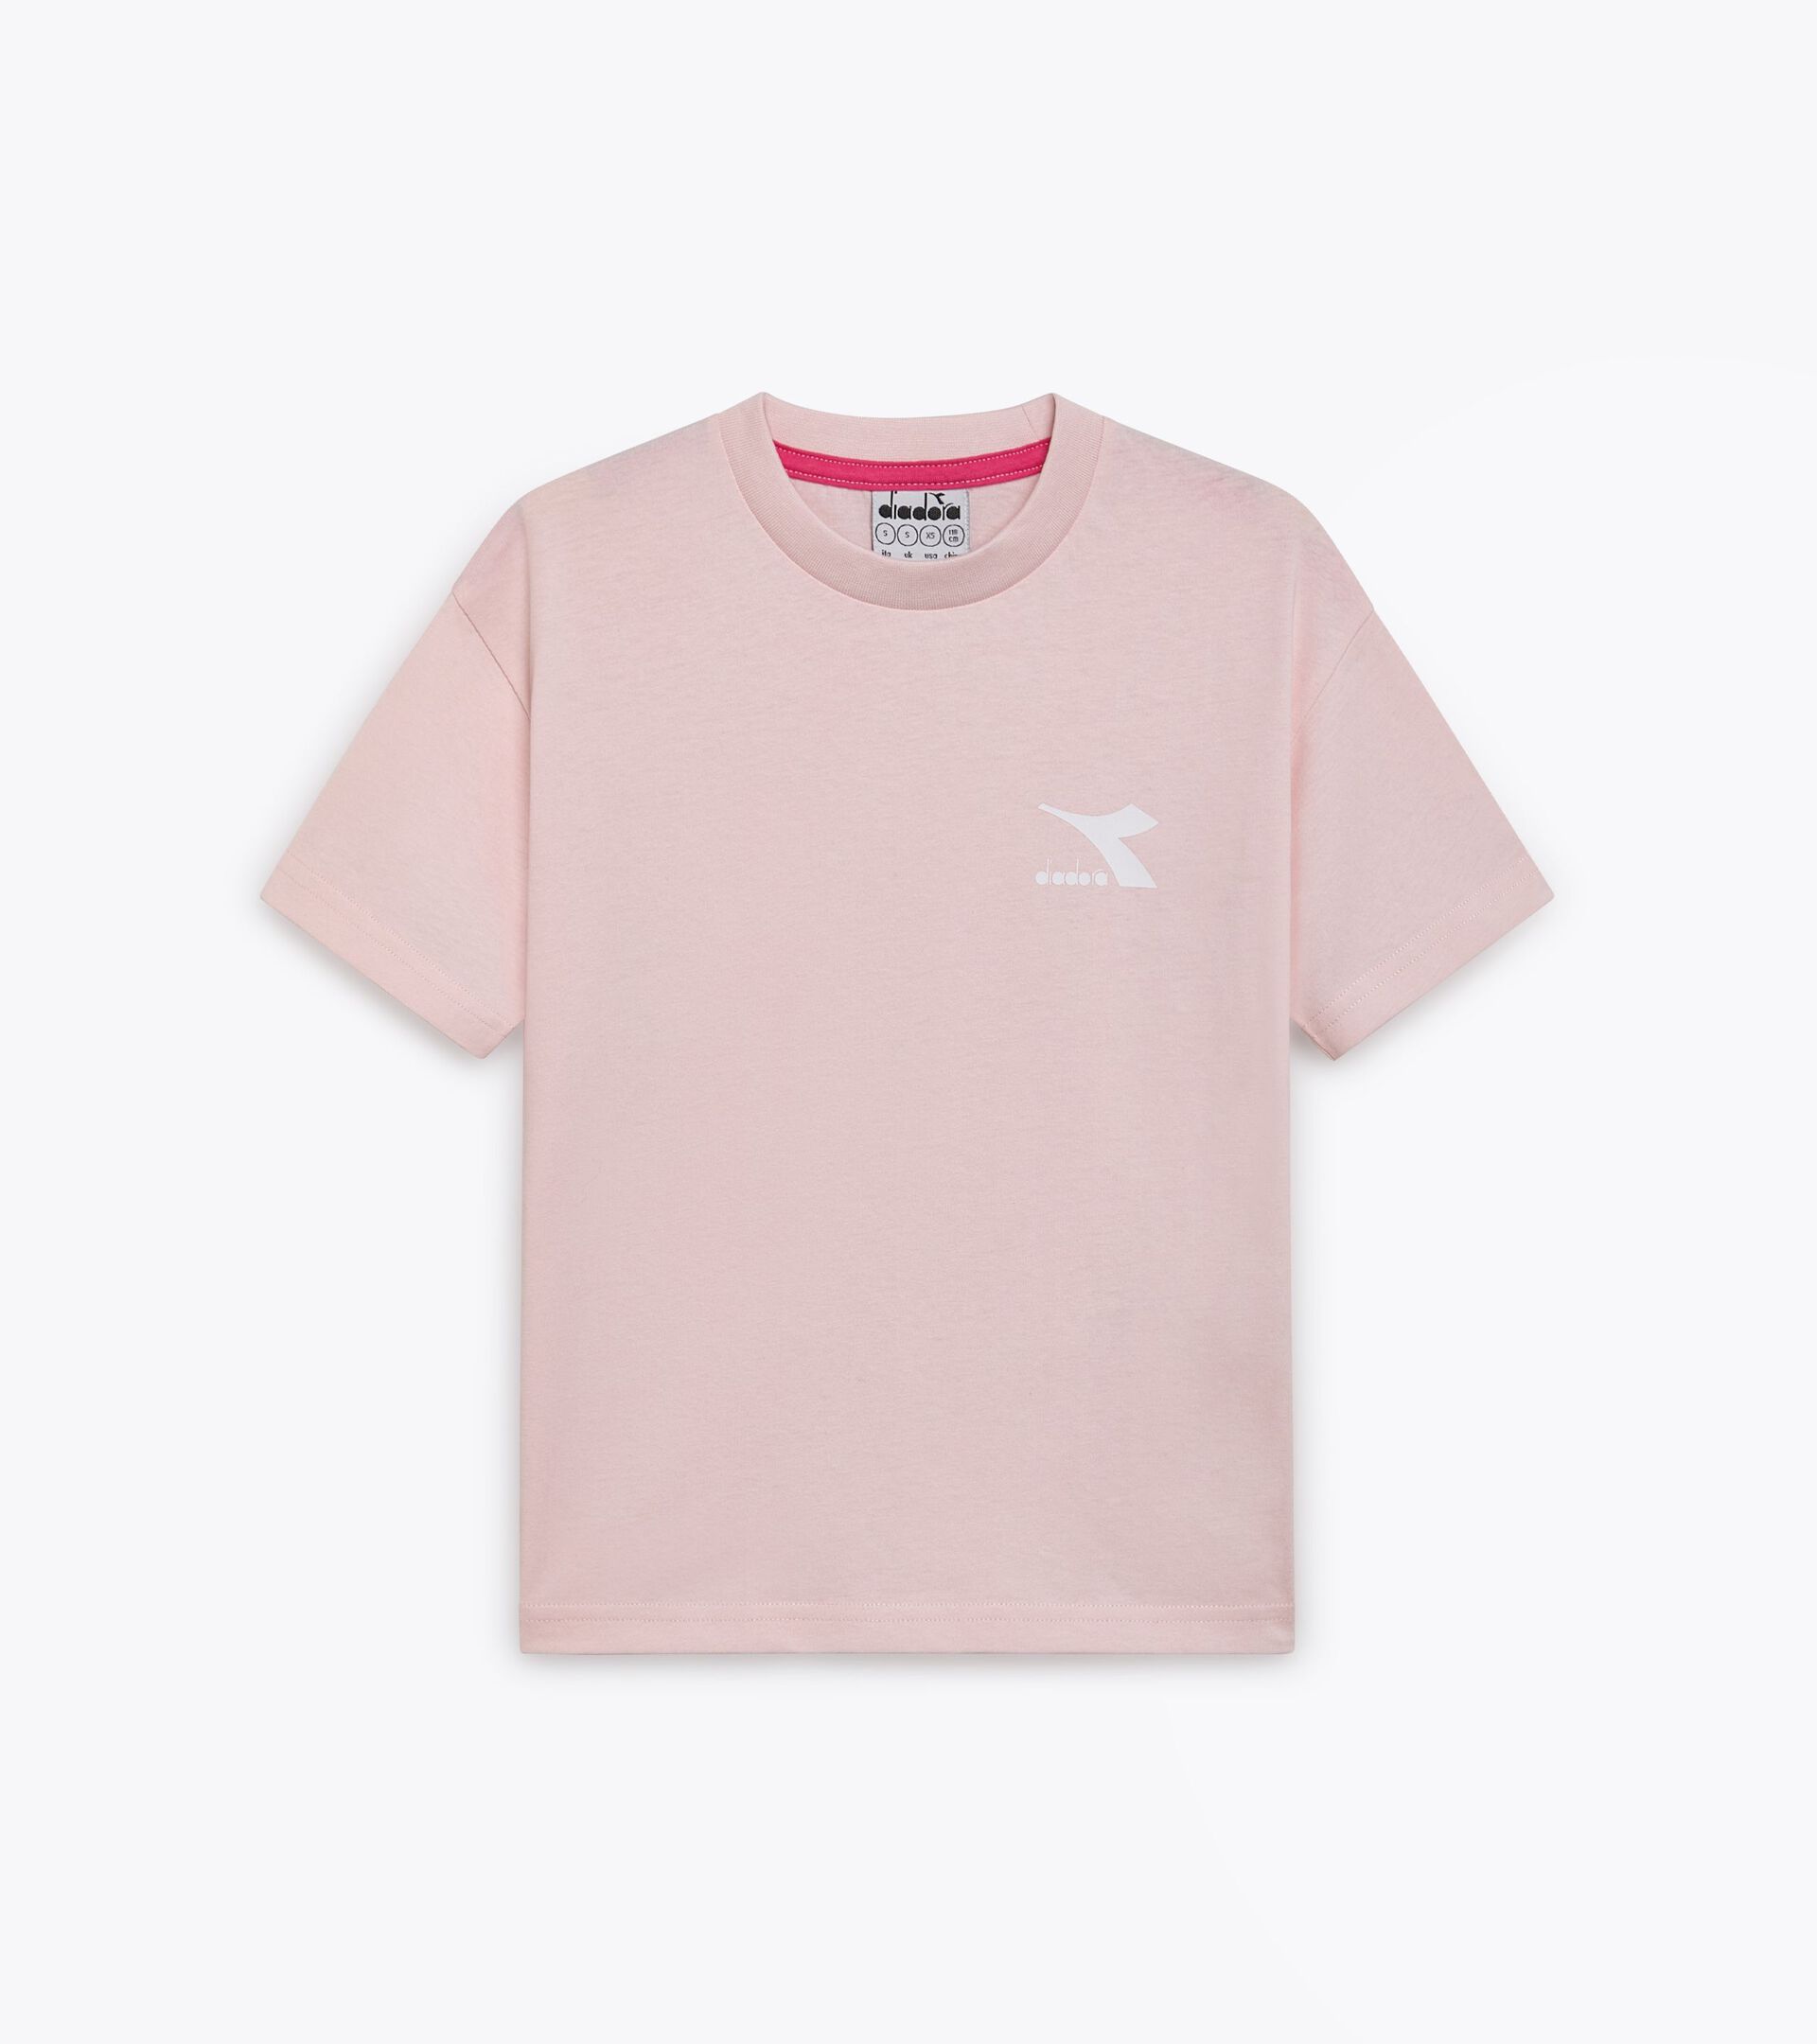 Cotton t-shirt - Kids JU.T-SHIRT SS SL WILD ROSE (50207) - Diadora